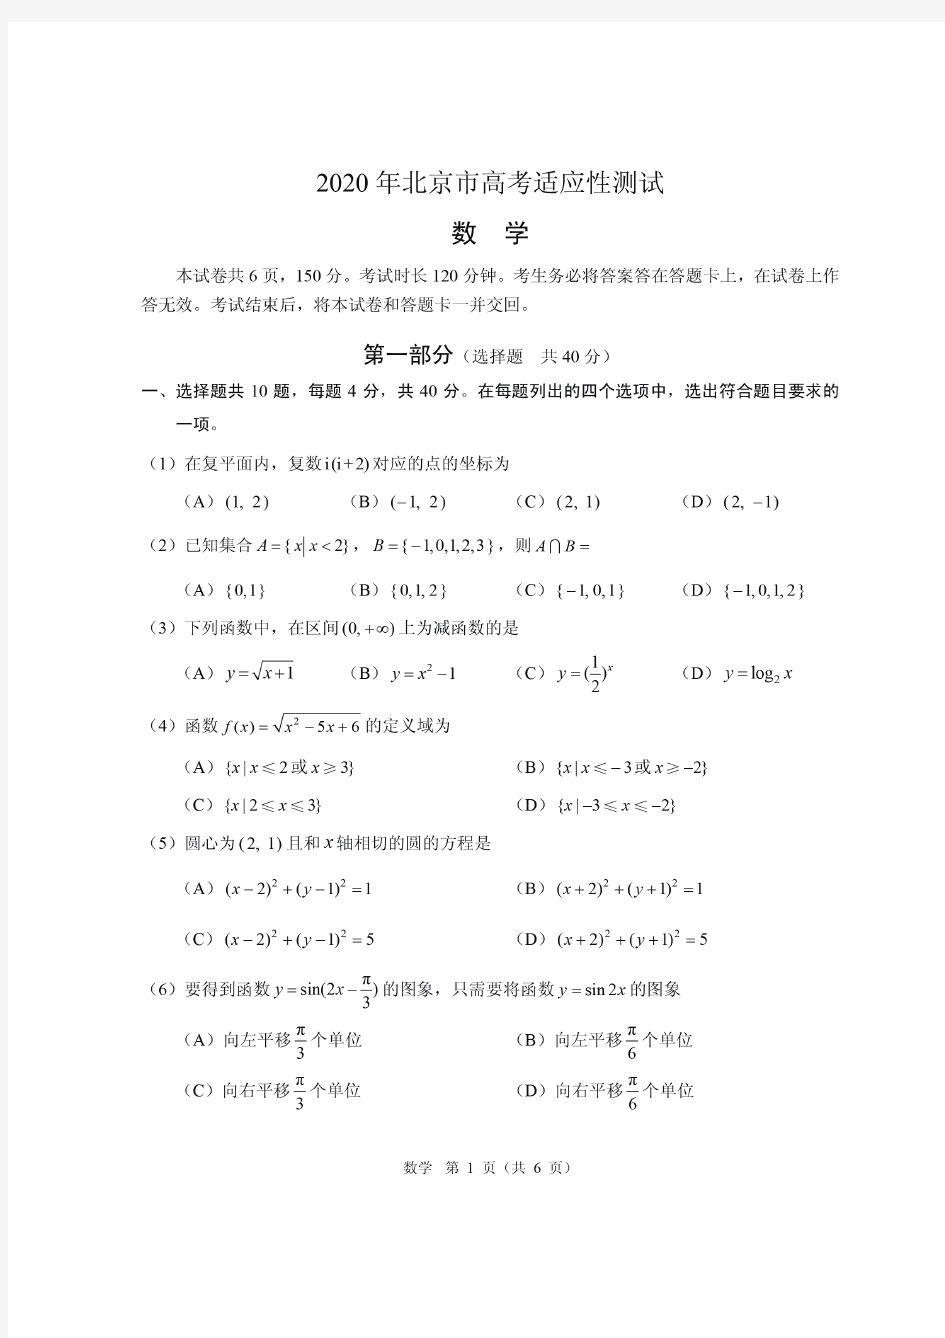 2020年北京高考适应性统一考试(试卷及答案)